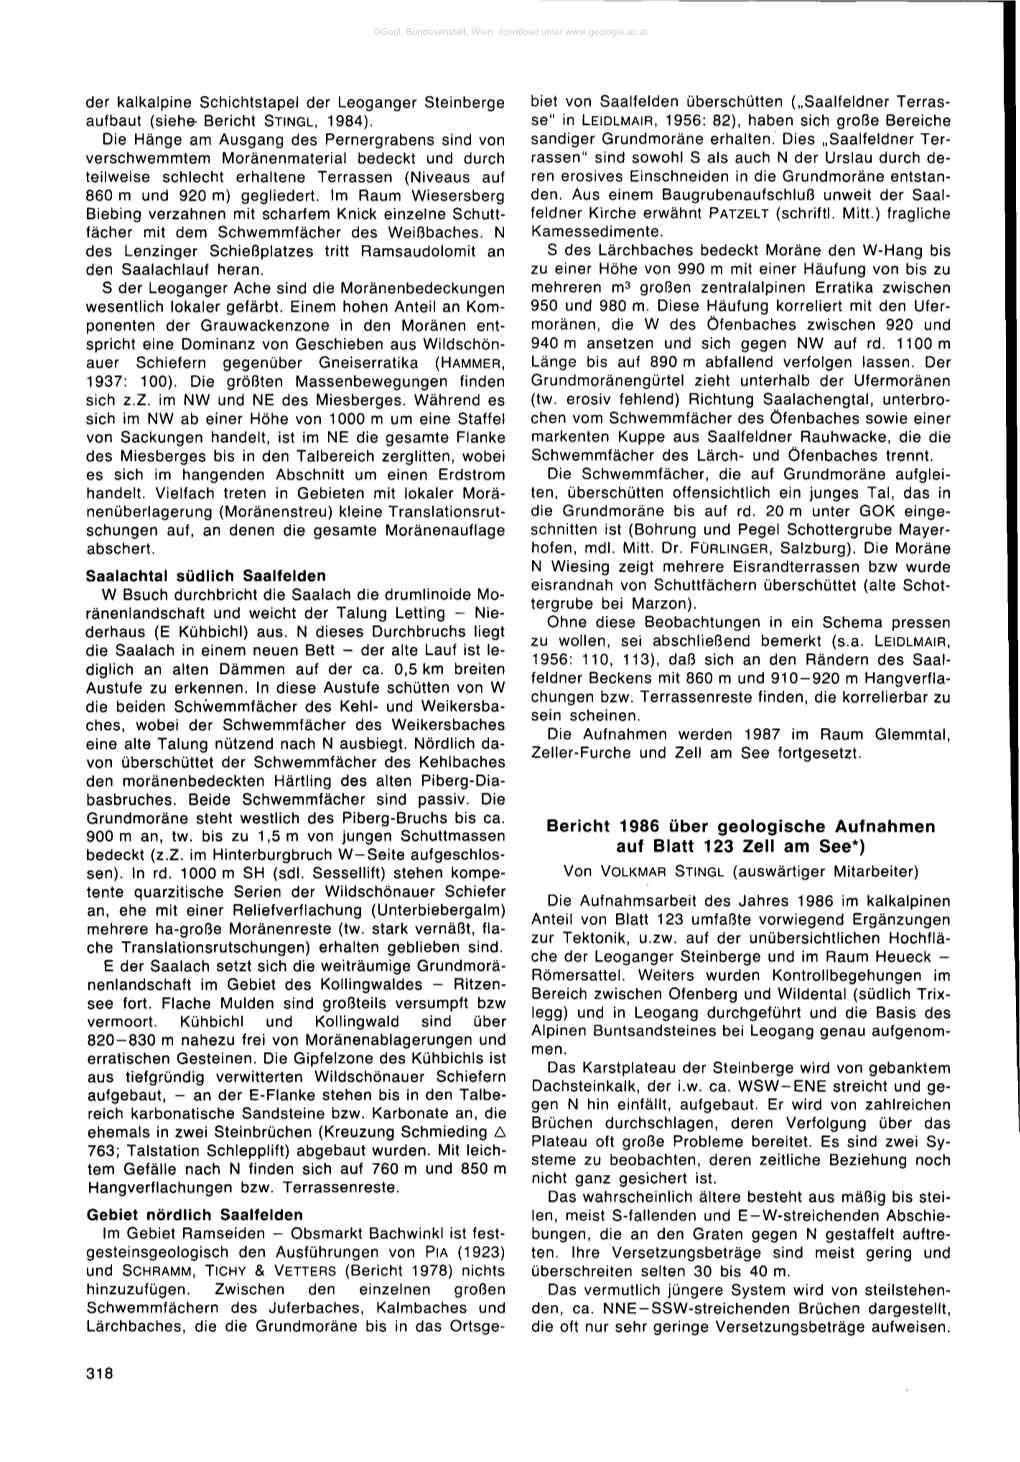 Bericht 1986 Über Geologische Aufnahmen Auf Blatt 123 Zell Am